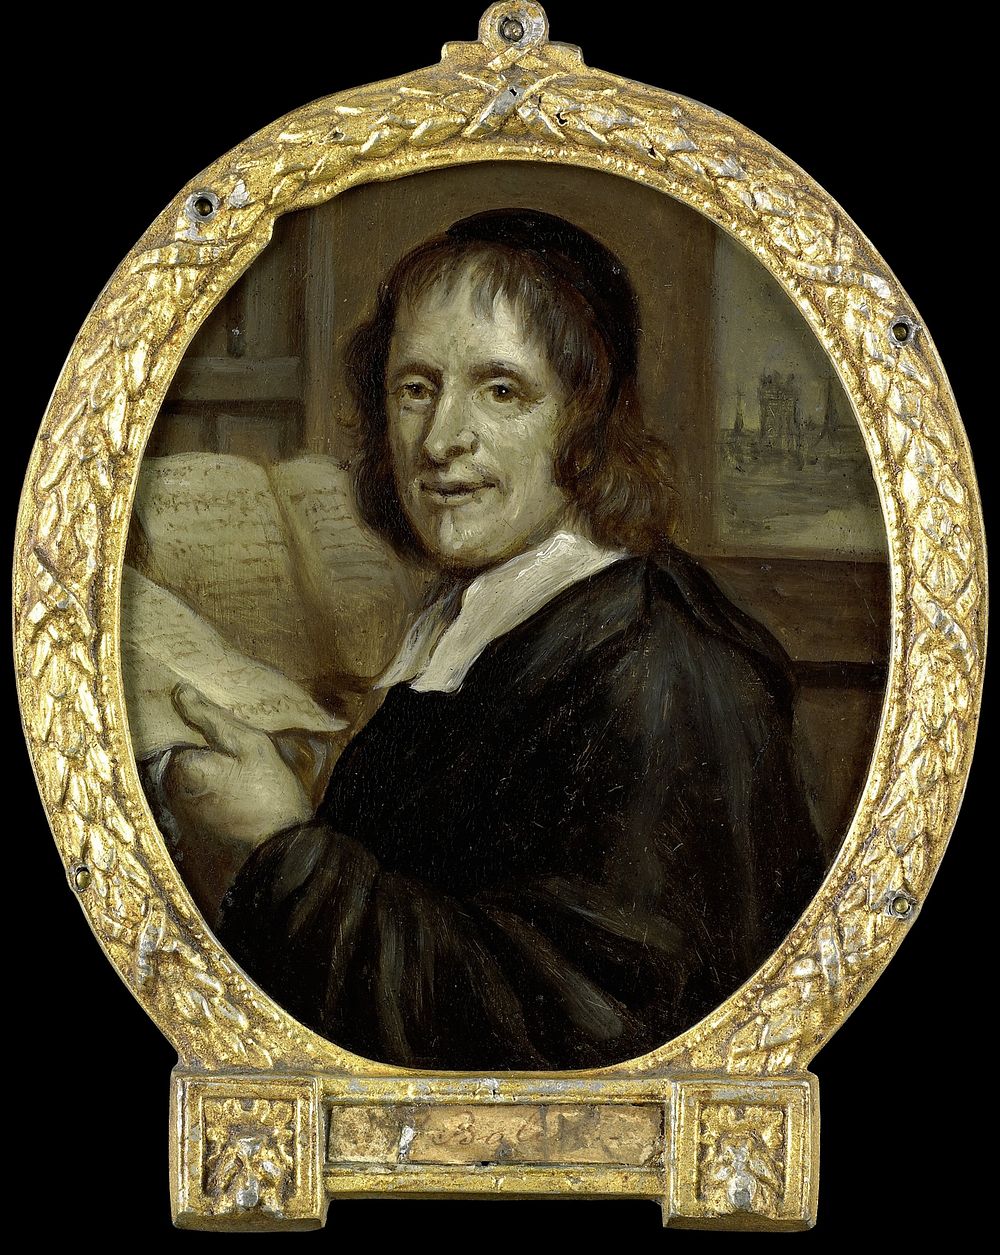 Matthijs Balen Jansz (1611-91), poet and chronicler of Dordrecht (1732 - 1771) by Jan Maurits Quinkhard and Romeyn de Hooghe